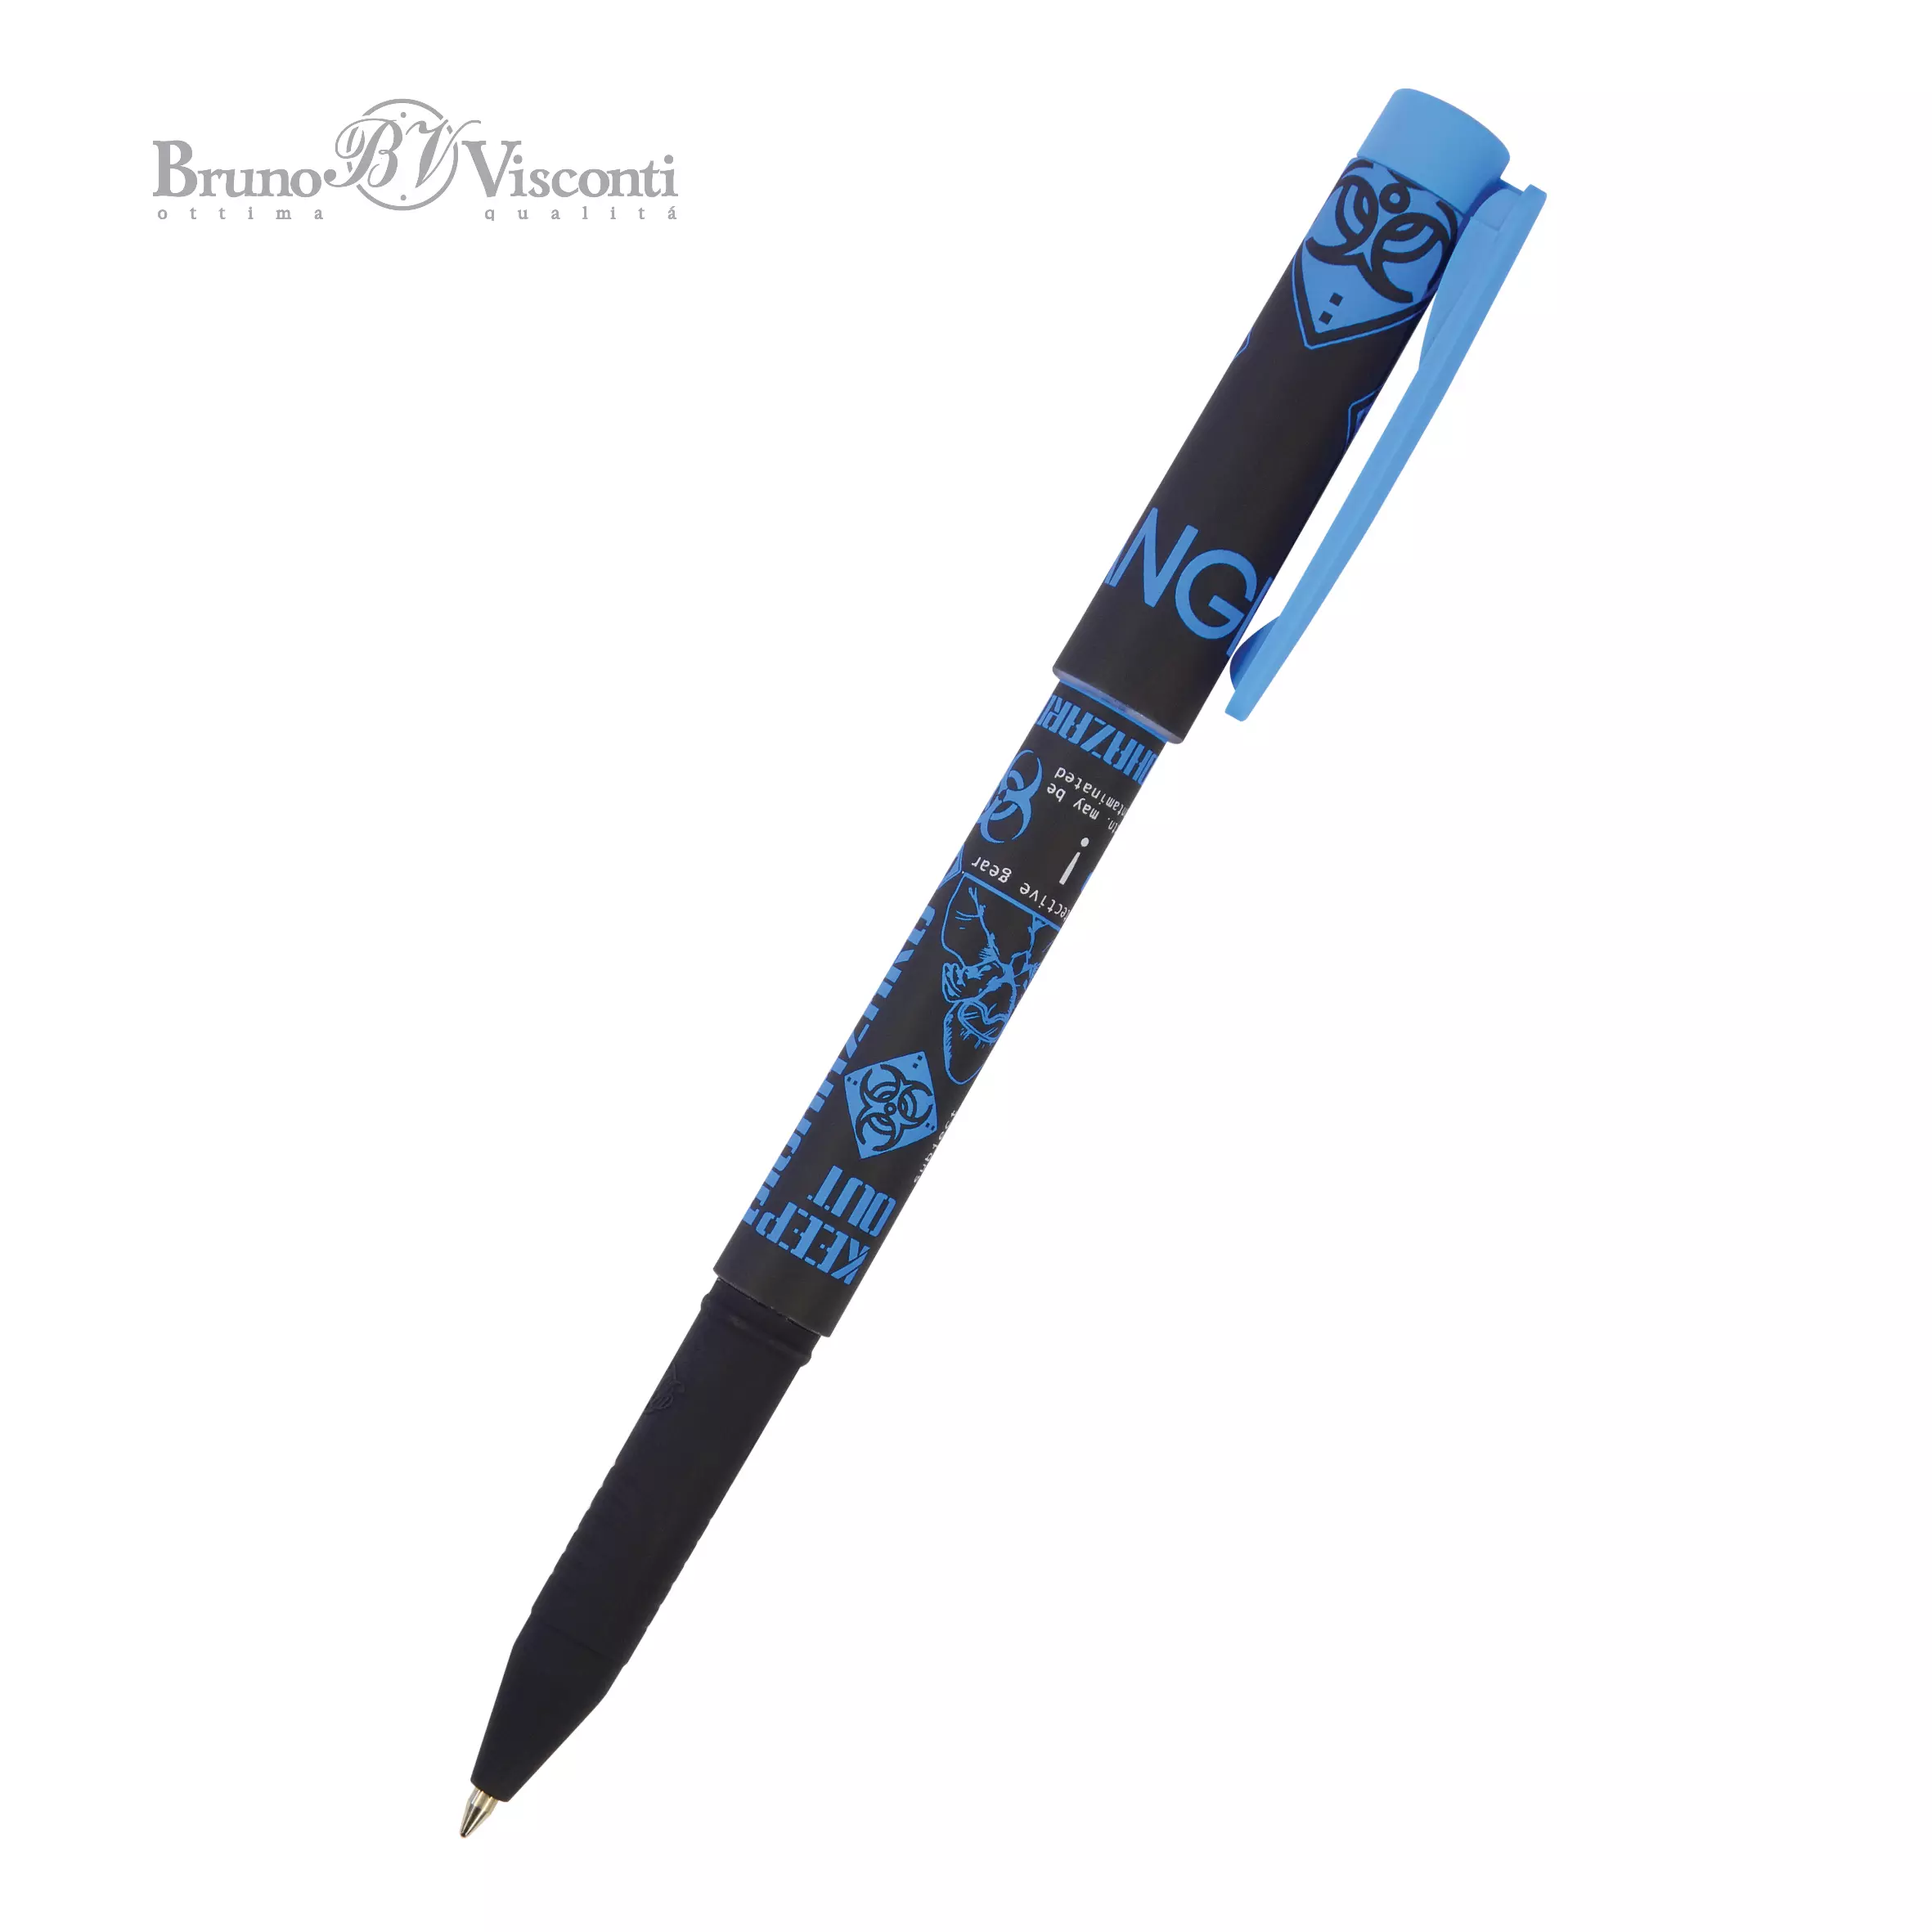 Шариковая ручка BrunoVisconti FreshWrite. Биологическая опасность! 0.7 мм, синяя